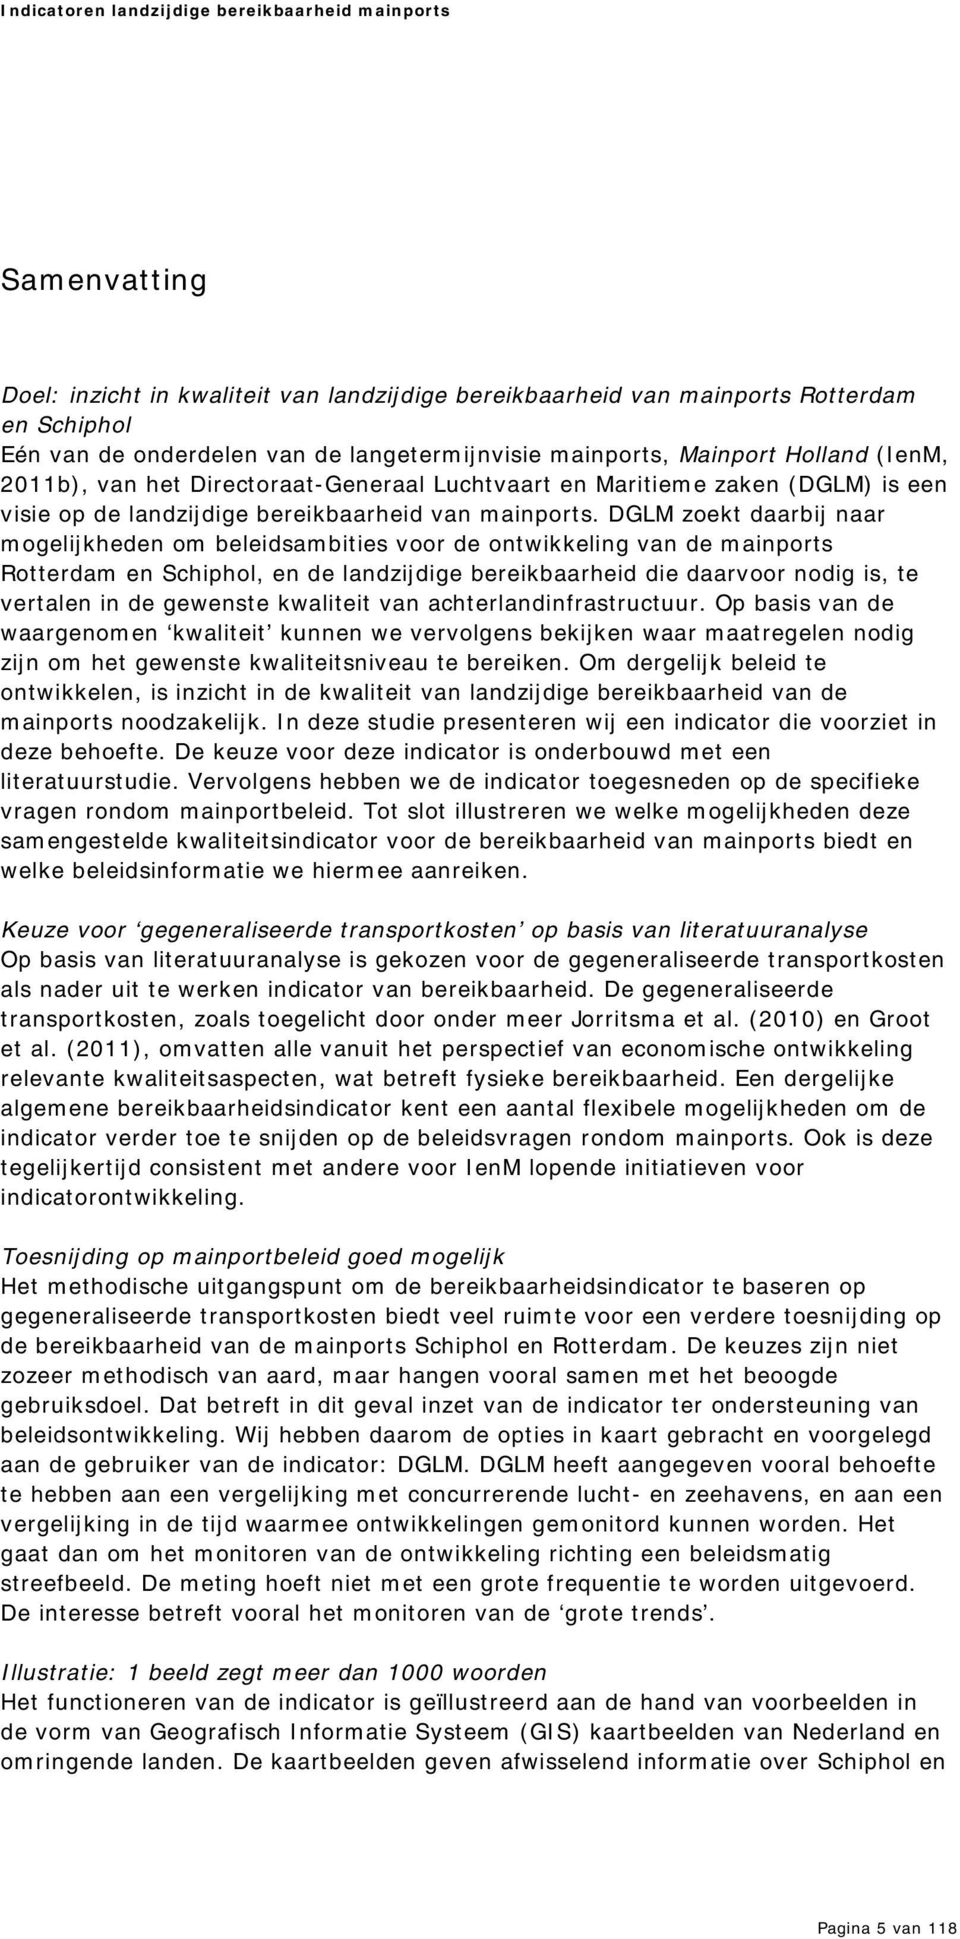 DGLM zoekt daarbij naar m ogelijkheden om beleidsam bities voor de ontwikkeling van de m ainports Rotterdam en Schiphol, en de landzijdige bereikbaarheid die daarvoor nodig is, te vertalen in de